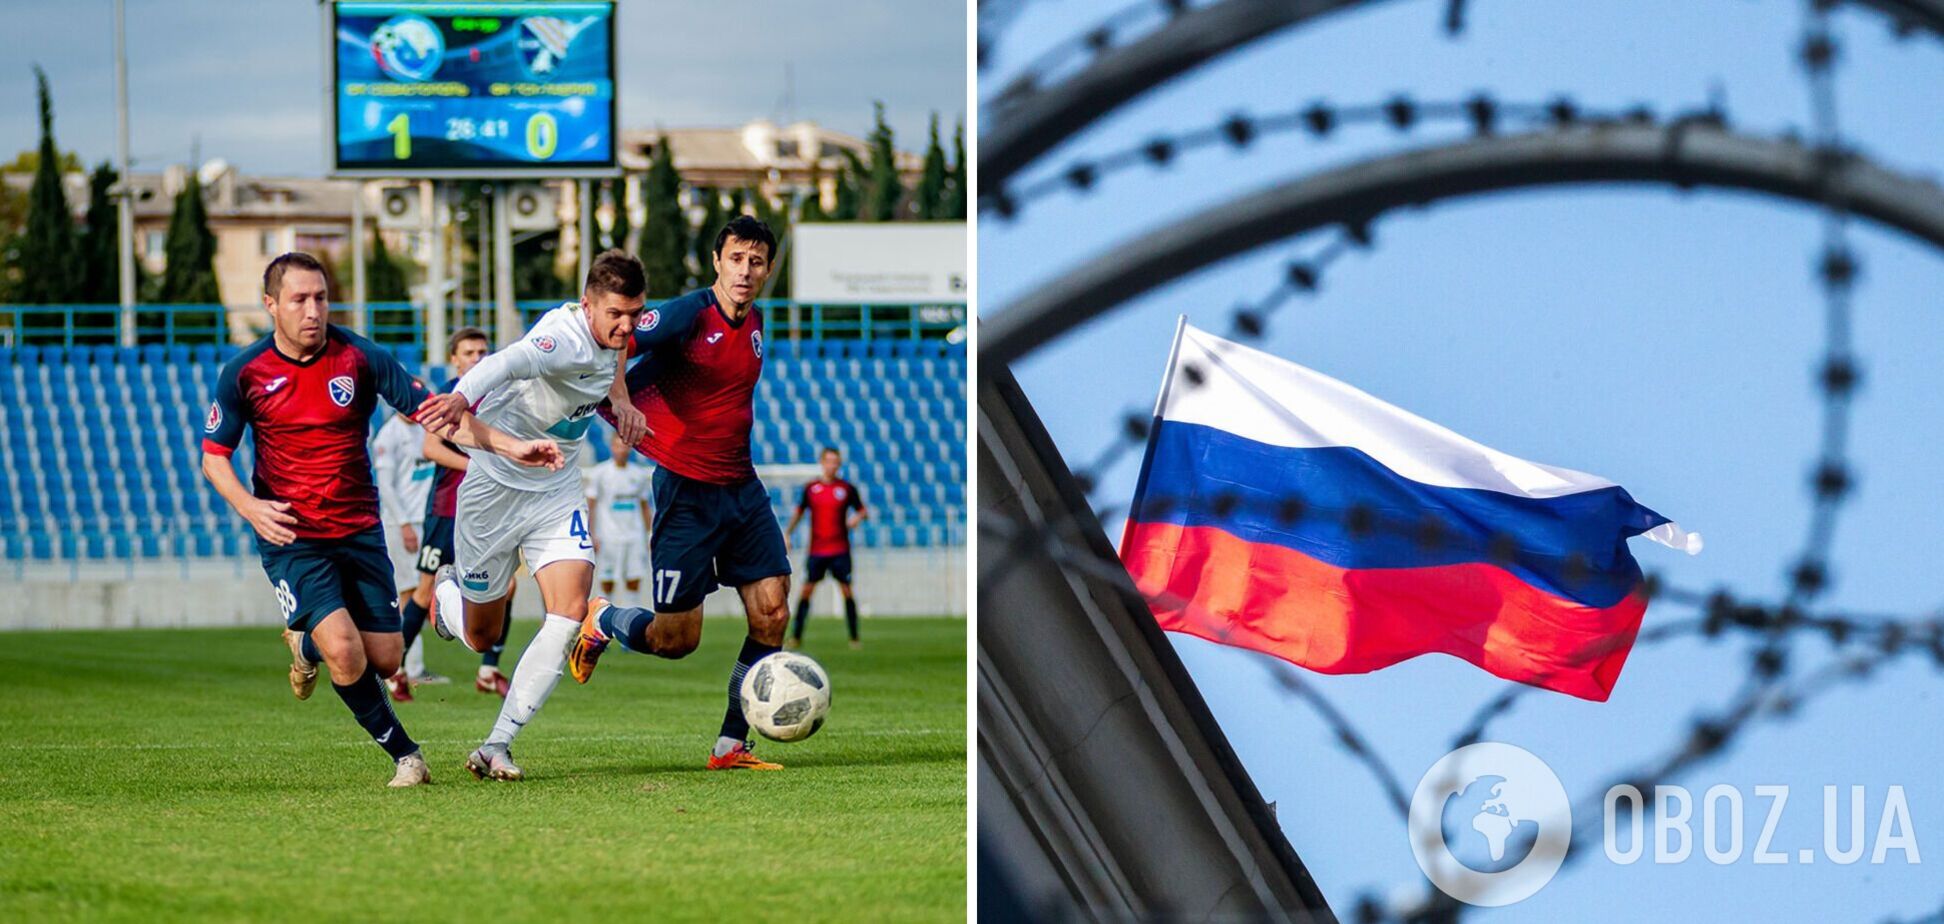 Оккупанты готовятся включить три клуба в чемпионат России по футболу